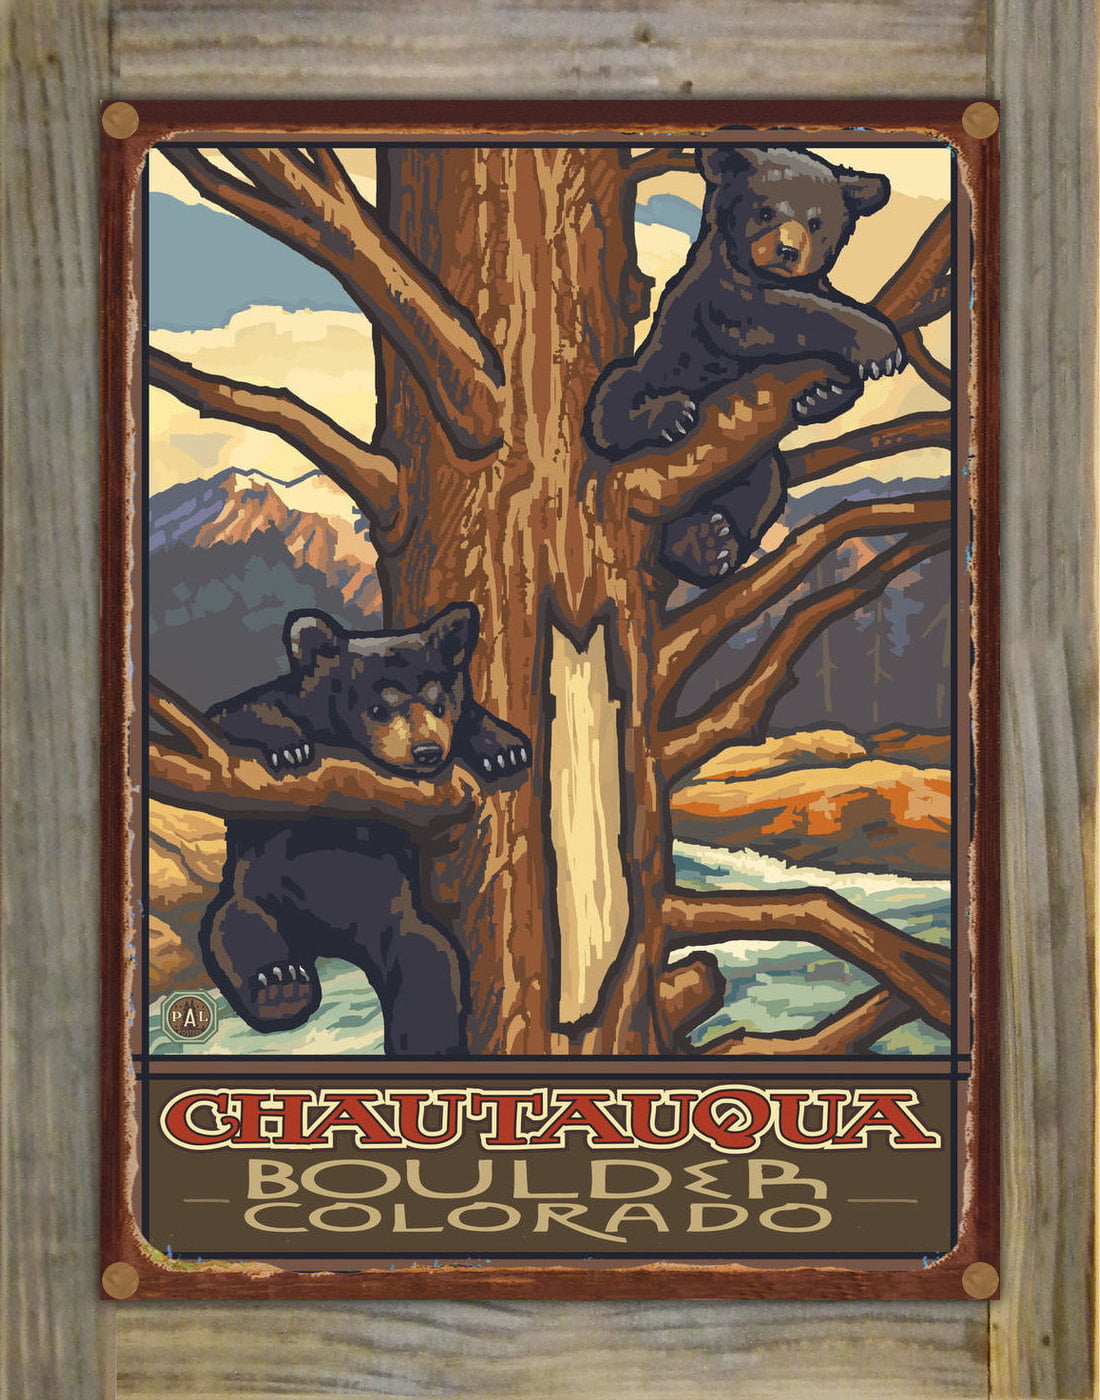 Lanquist Kentucky Bear Cub Falls Giclee Art Print Poster from Original Travel Artwork by Artist Paul A